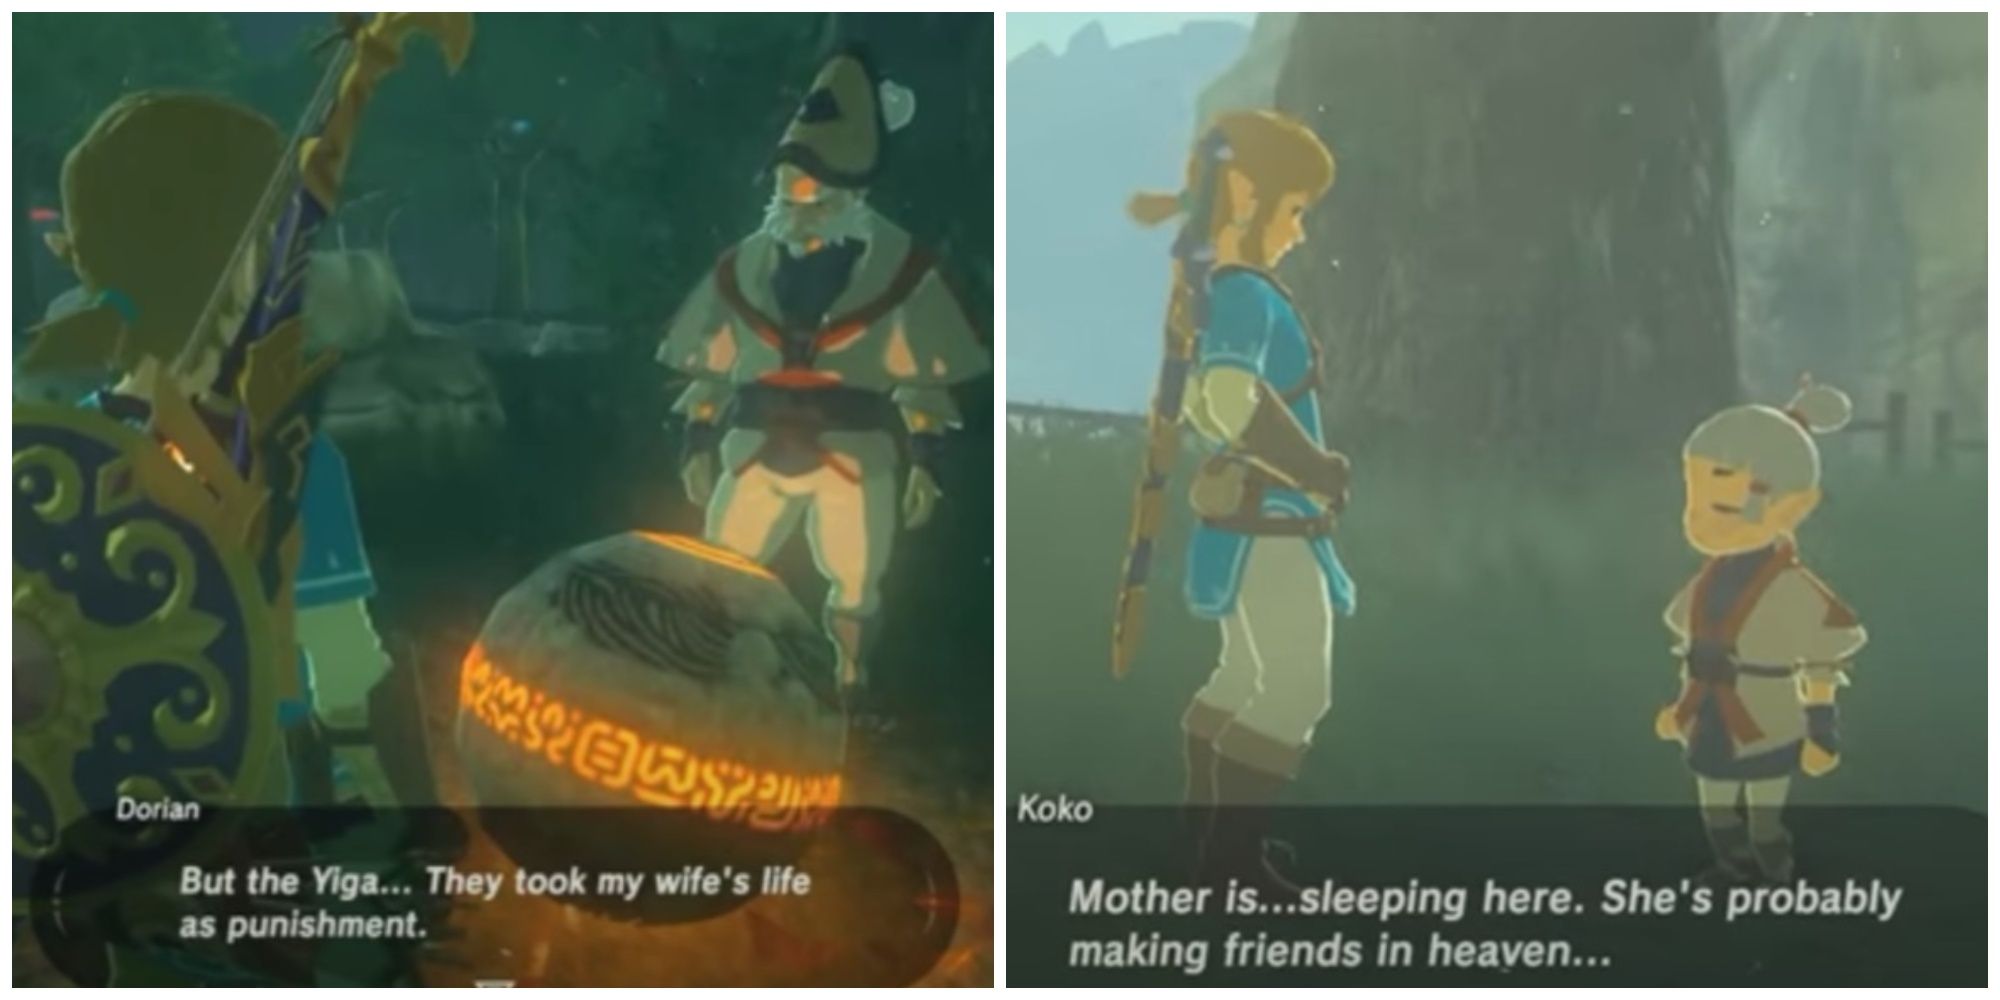 Dorian and Koko in Legend of Zelda: Breath of the Wild